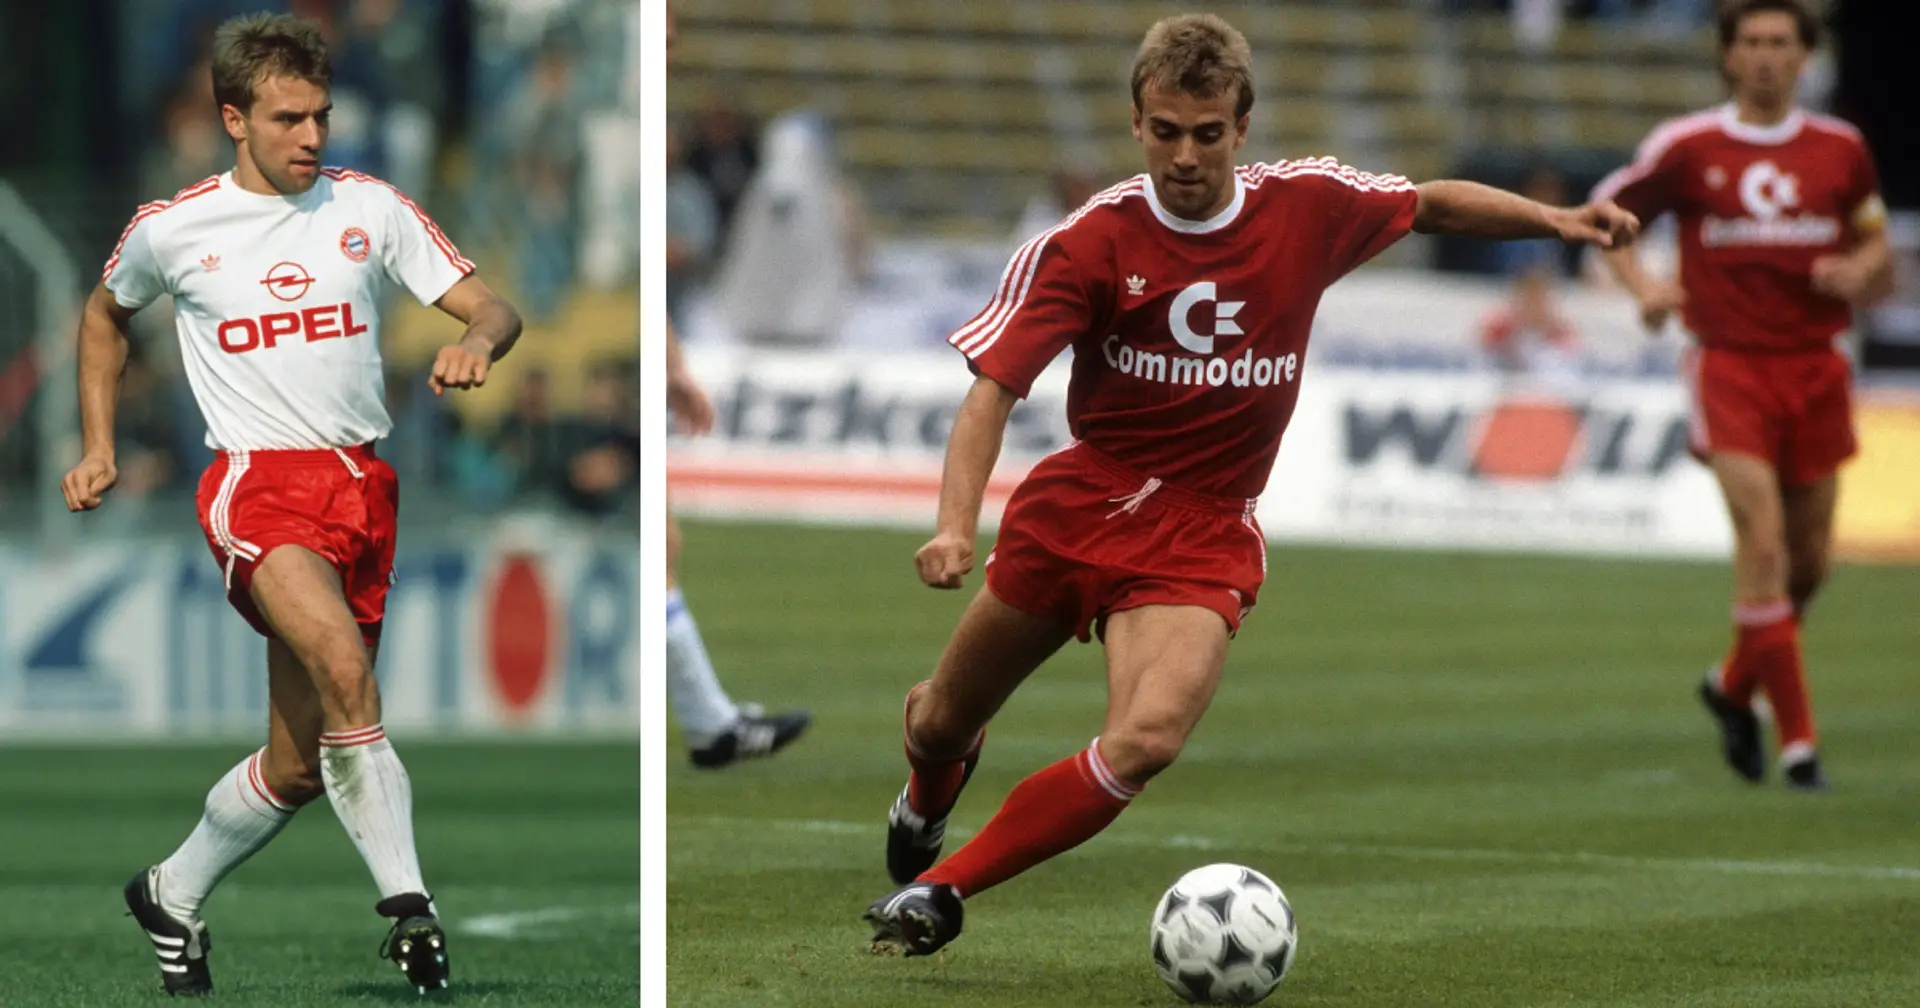 Hansi Flick opferte einst eine Stuttgart-Karriere für sein Studium - kurze Zeit später wechselte er zu Bayern